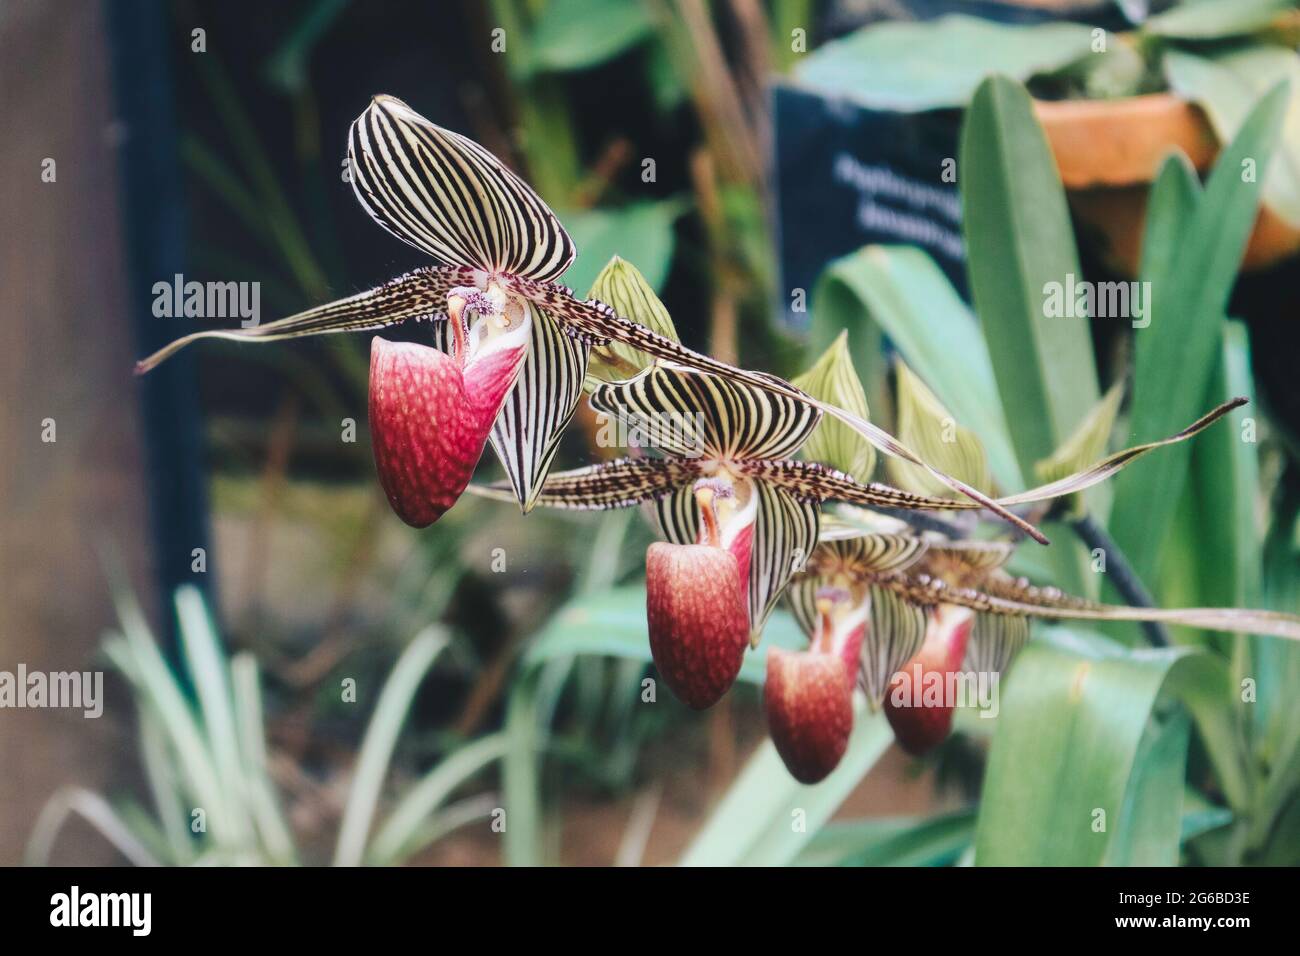 Close up of beautiful paphiopedilum orchid (paphiopedilum glaucophyllum) Stock Photo